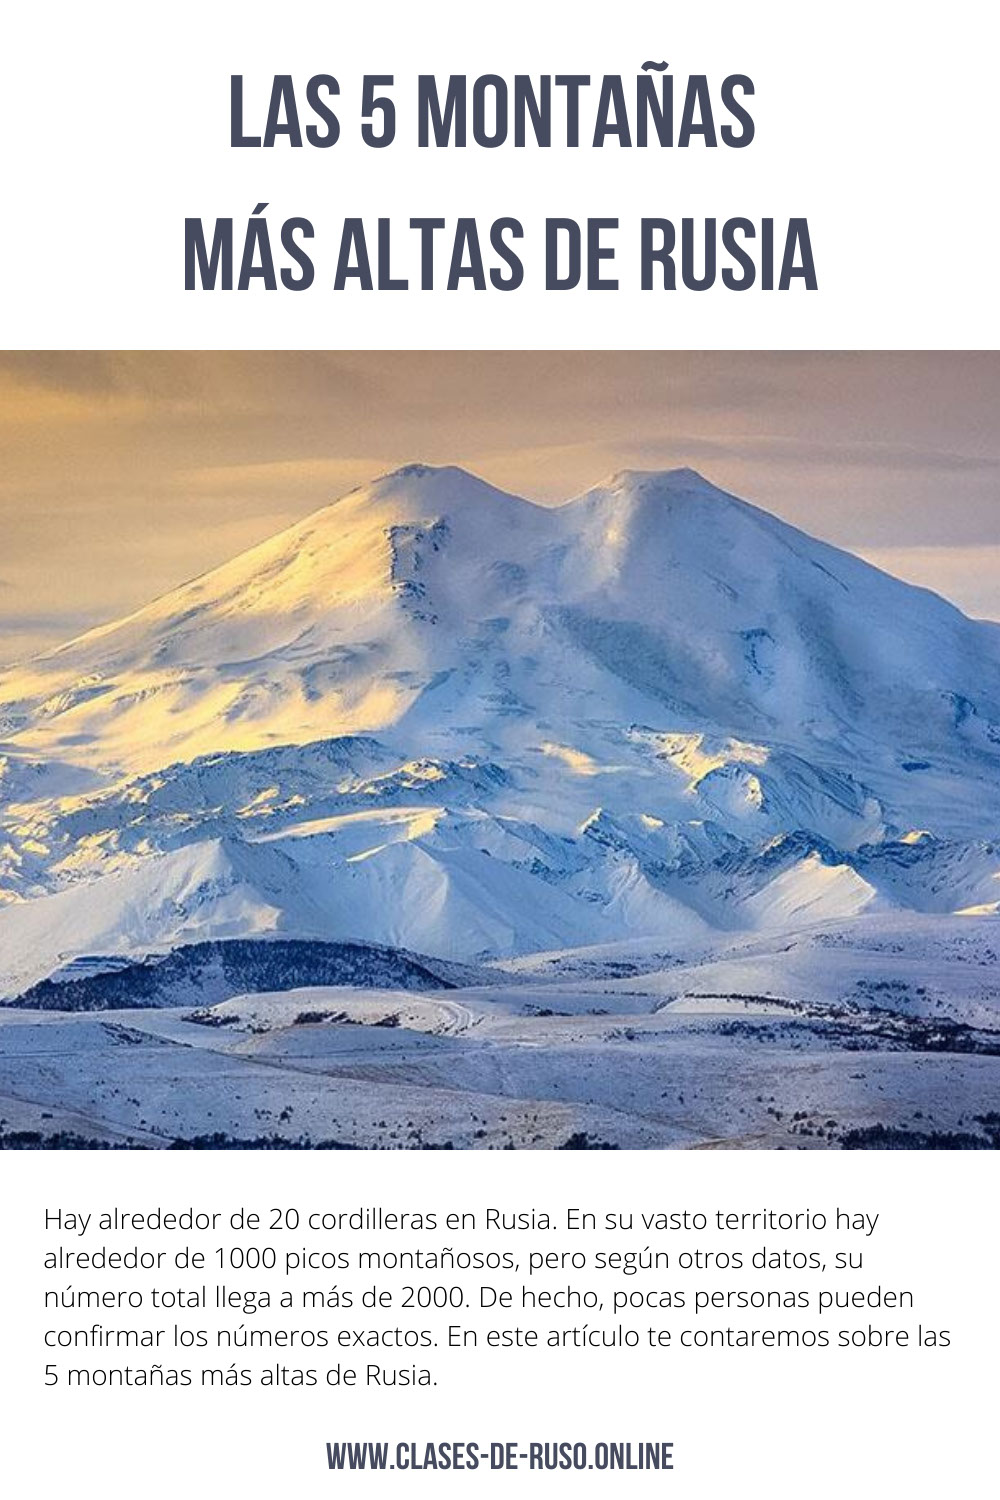 Las 5 montañas altas de Rusia